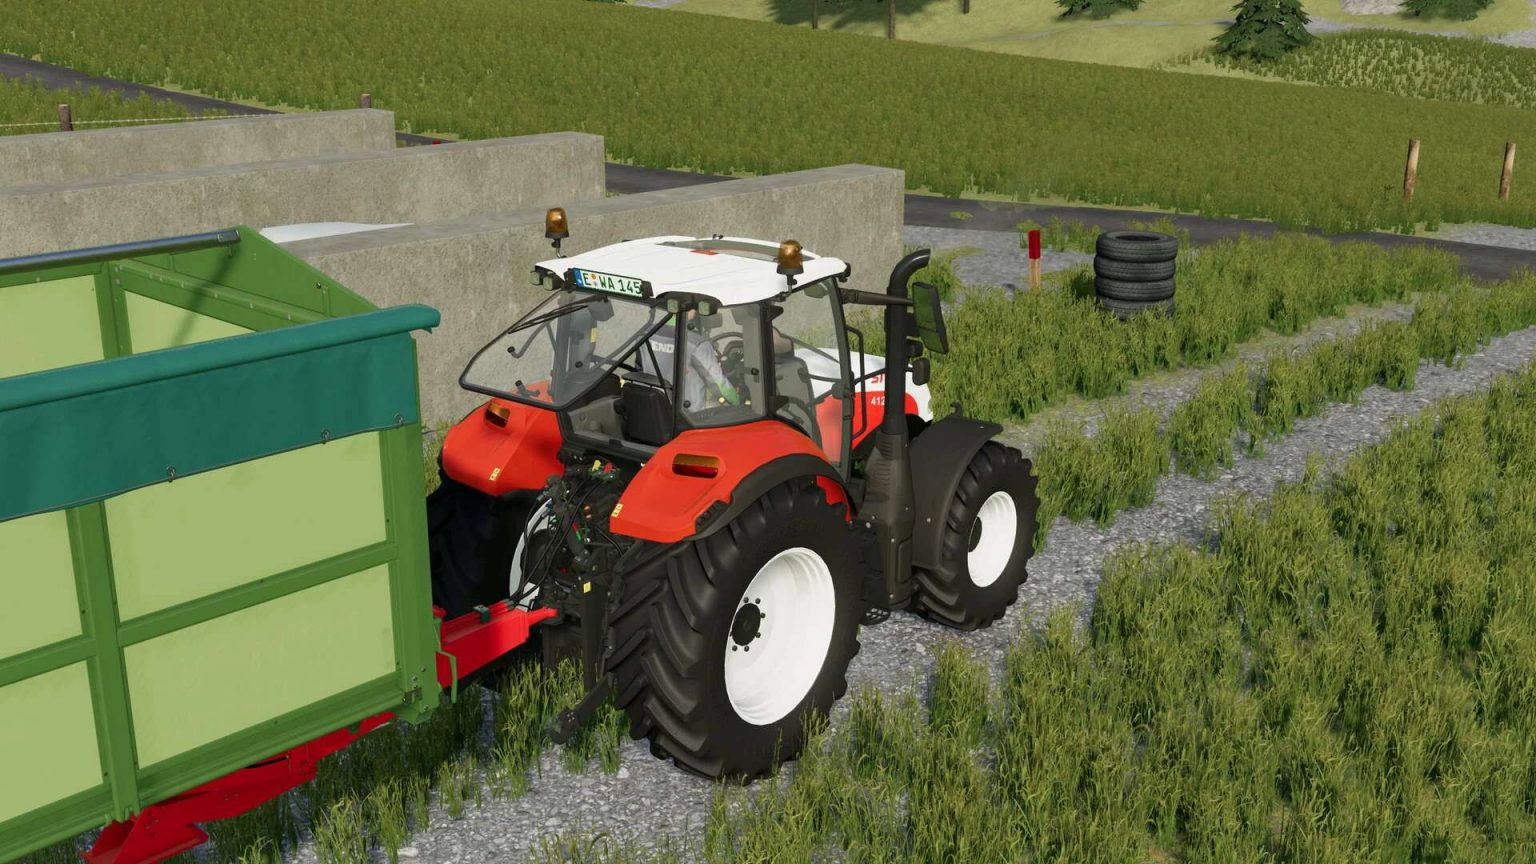 Steyr Multi Serie 2016 V10 Fs22 Farming Simulator 22 Mod Fs22 Mod 8913